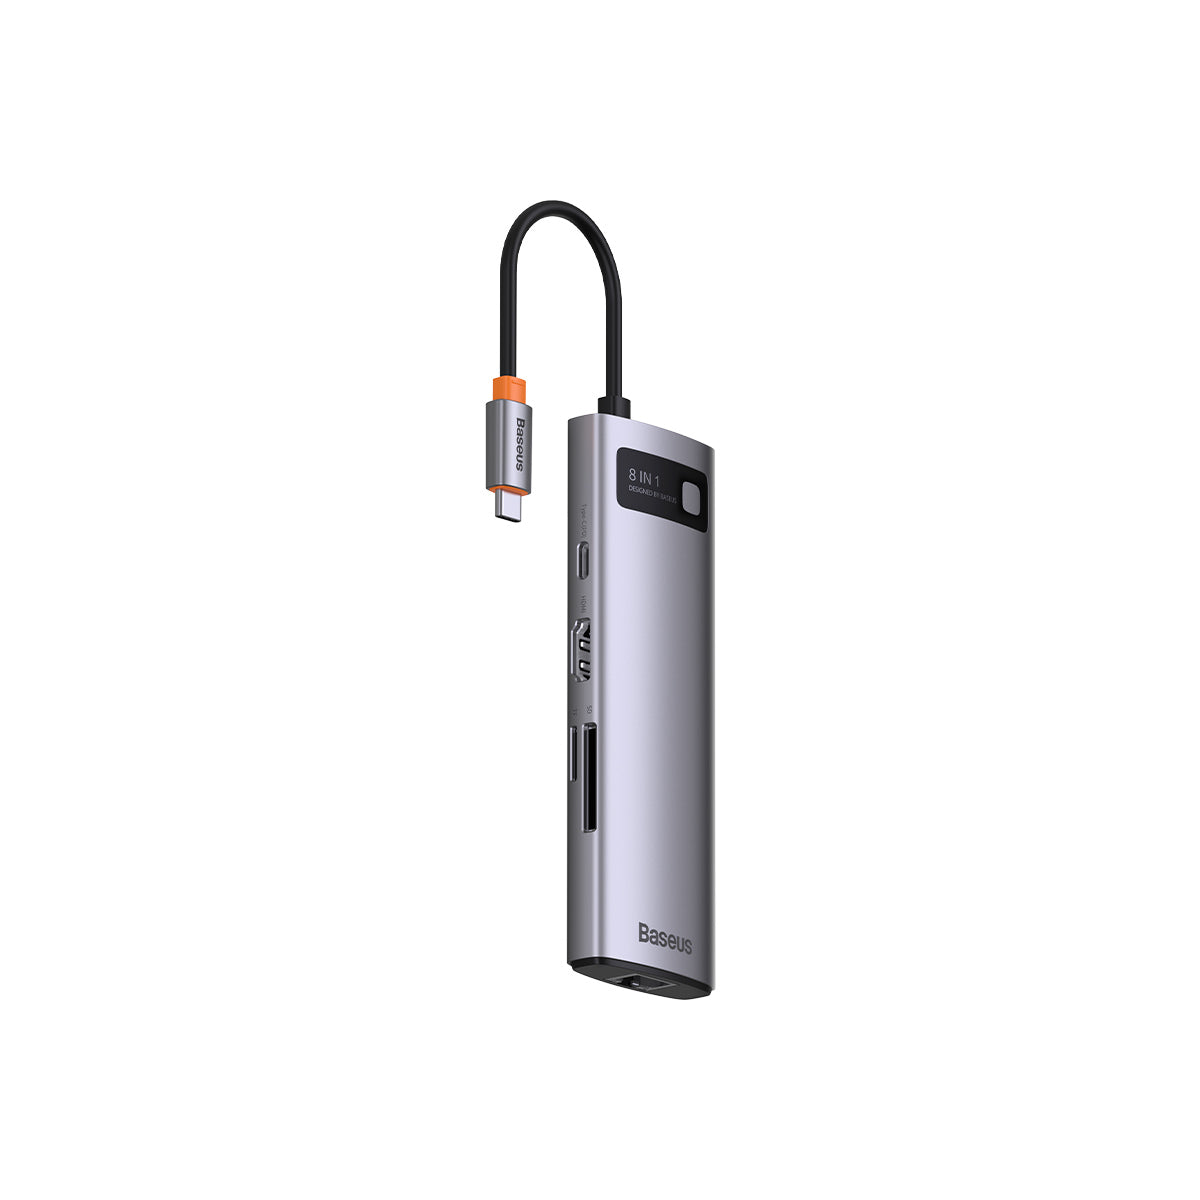 Baseus – HUB 8in1 répartiteur USB 3.1 Type C vers HDMI, adaptateur